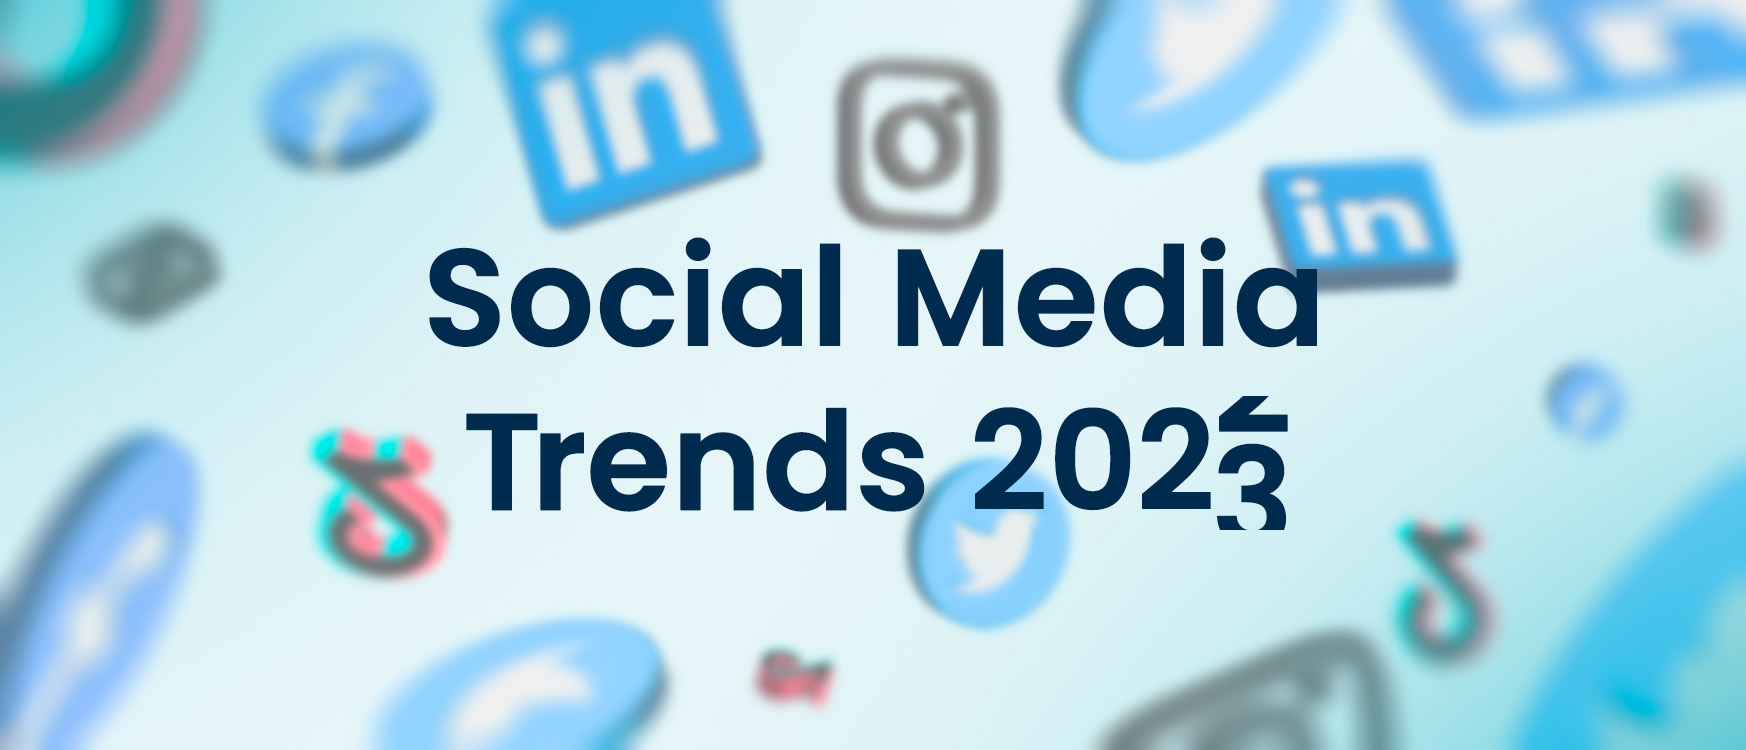 Social Media Trends 2023 Alt du behøver at vide JJ Blog